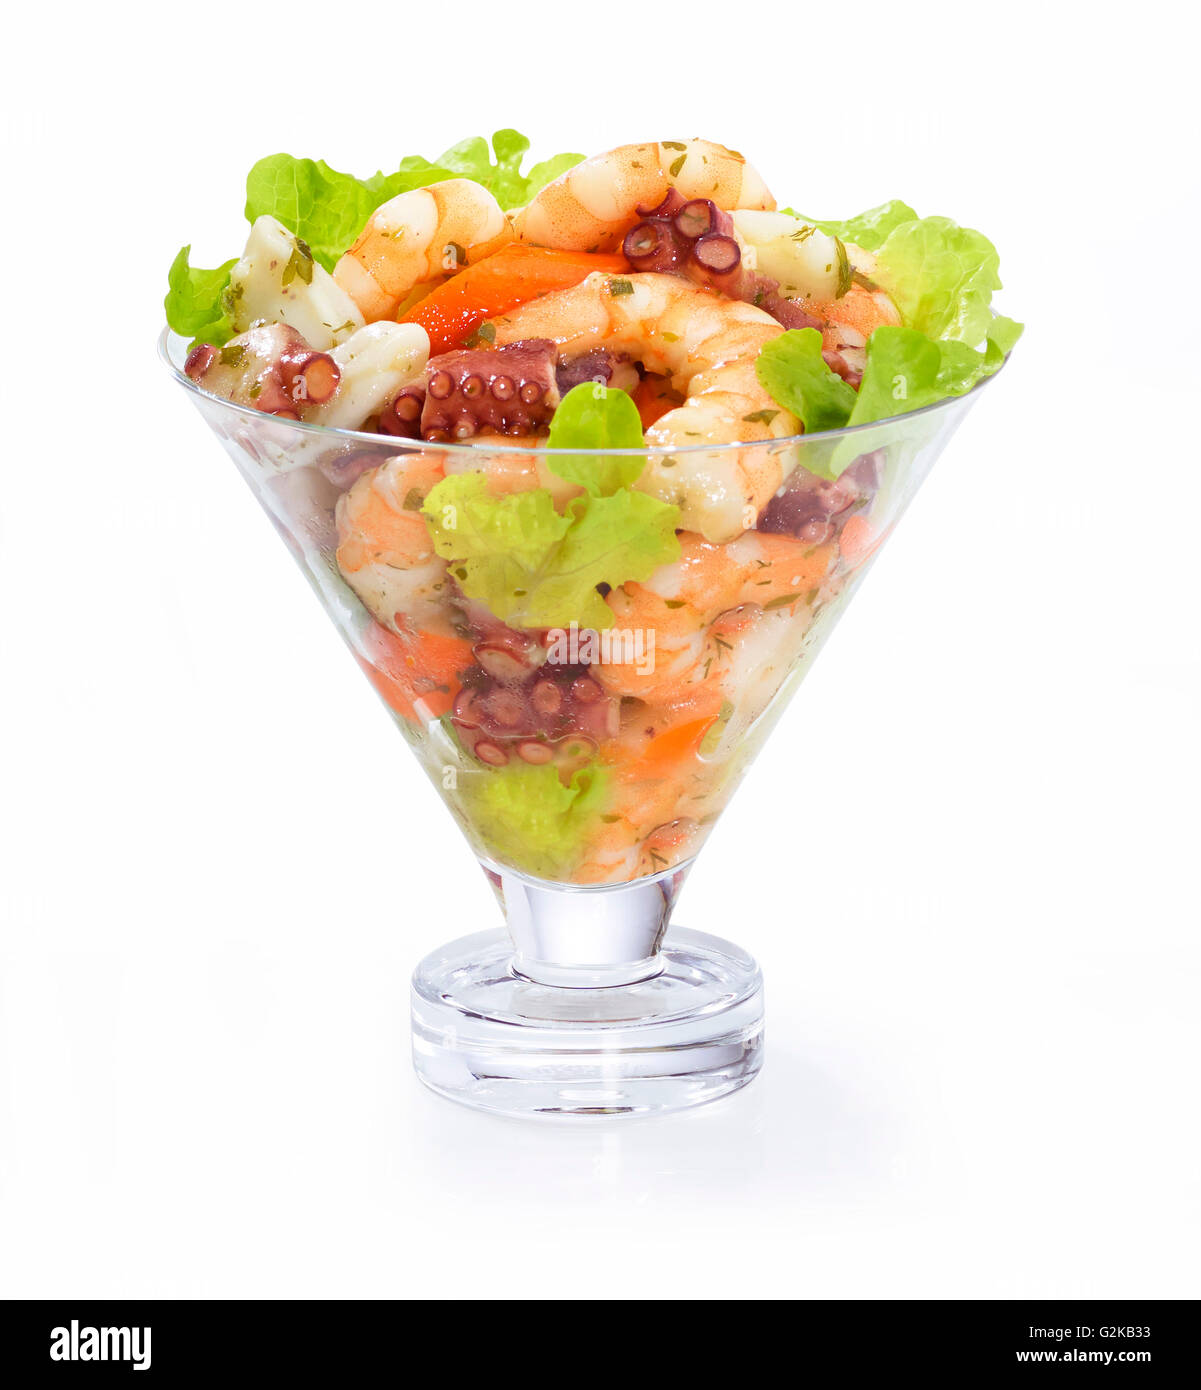 Schüssel mit Salat von Meeresfrüchten, Garnelen und Tintenfisch, weißer Hintergrund Stockfoto